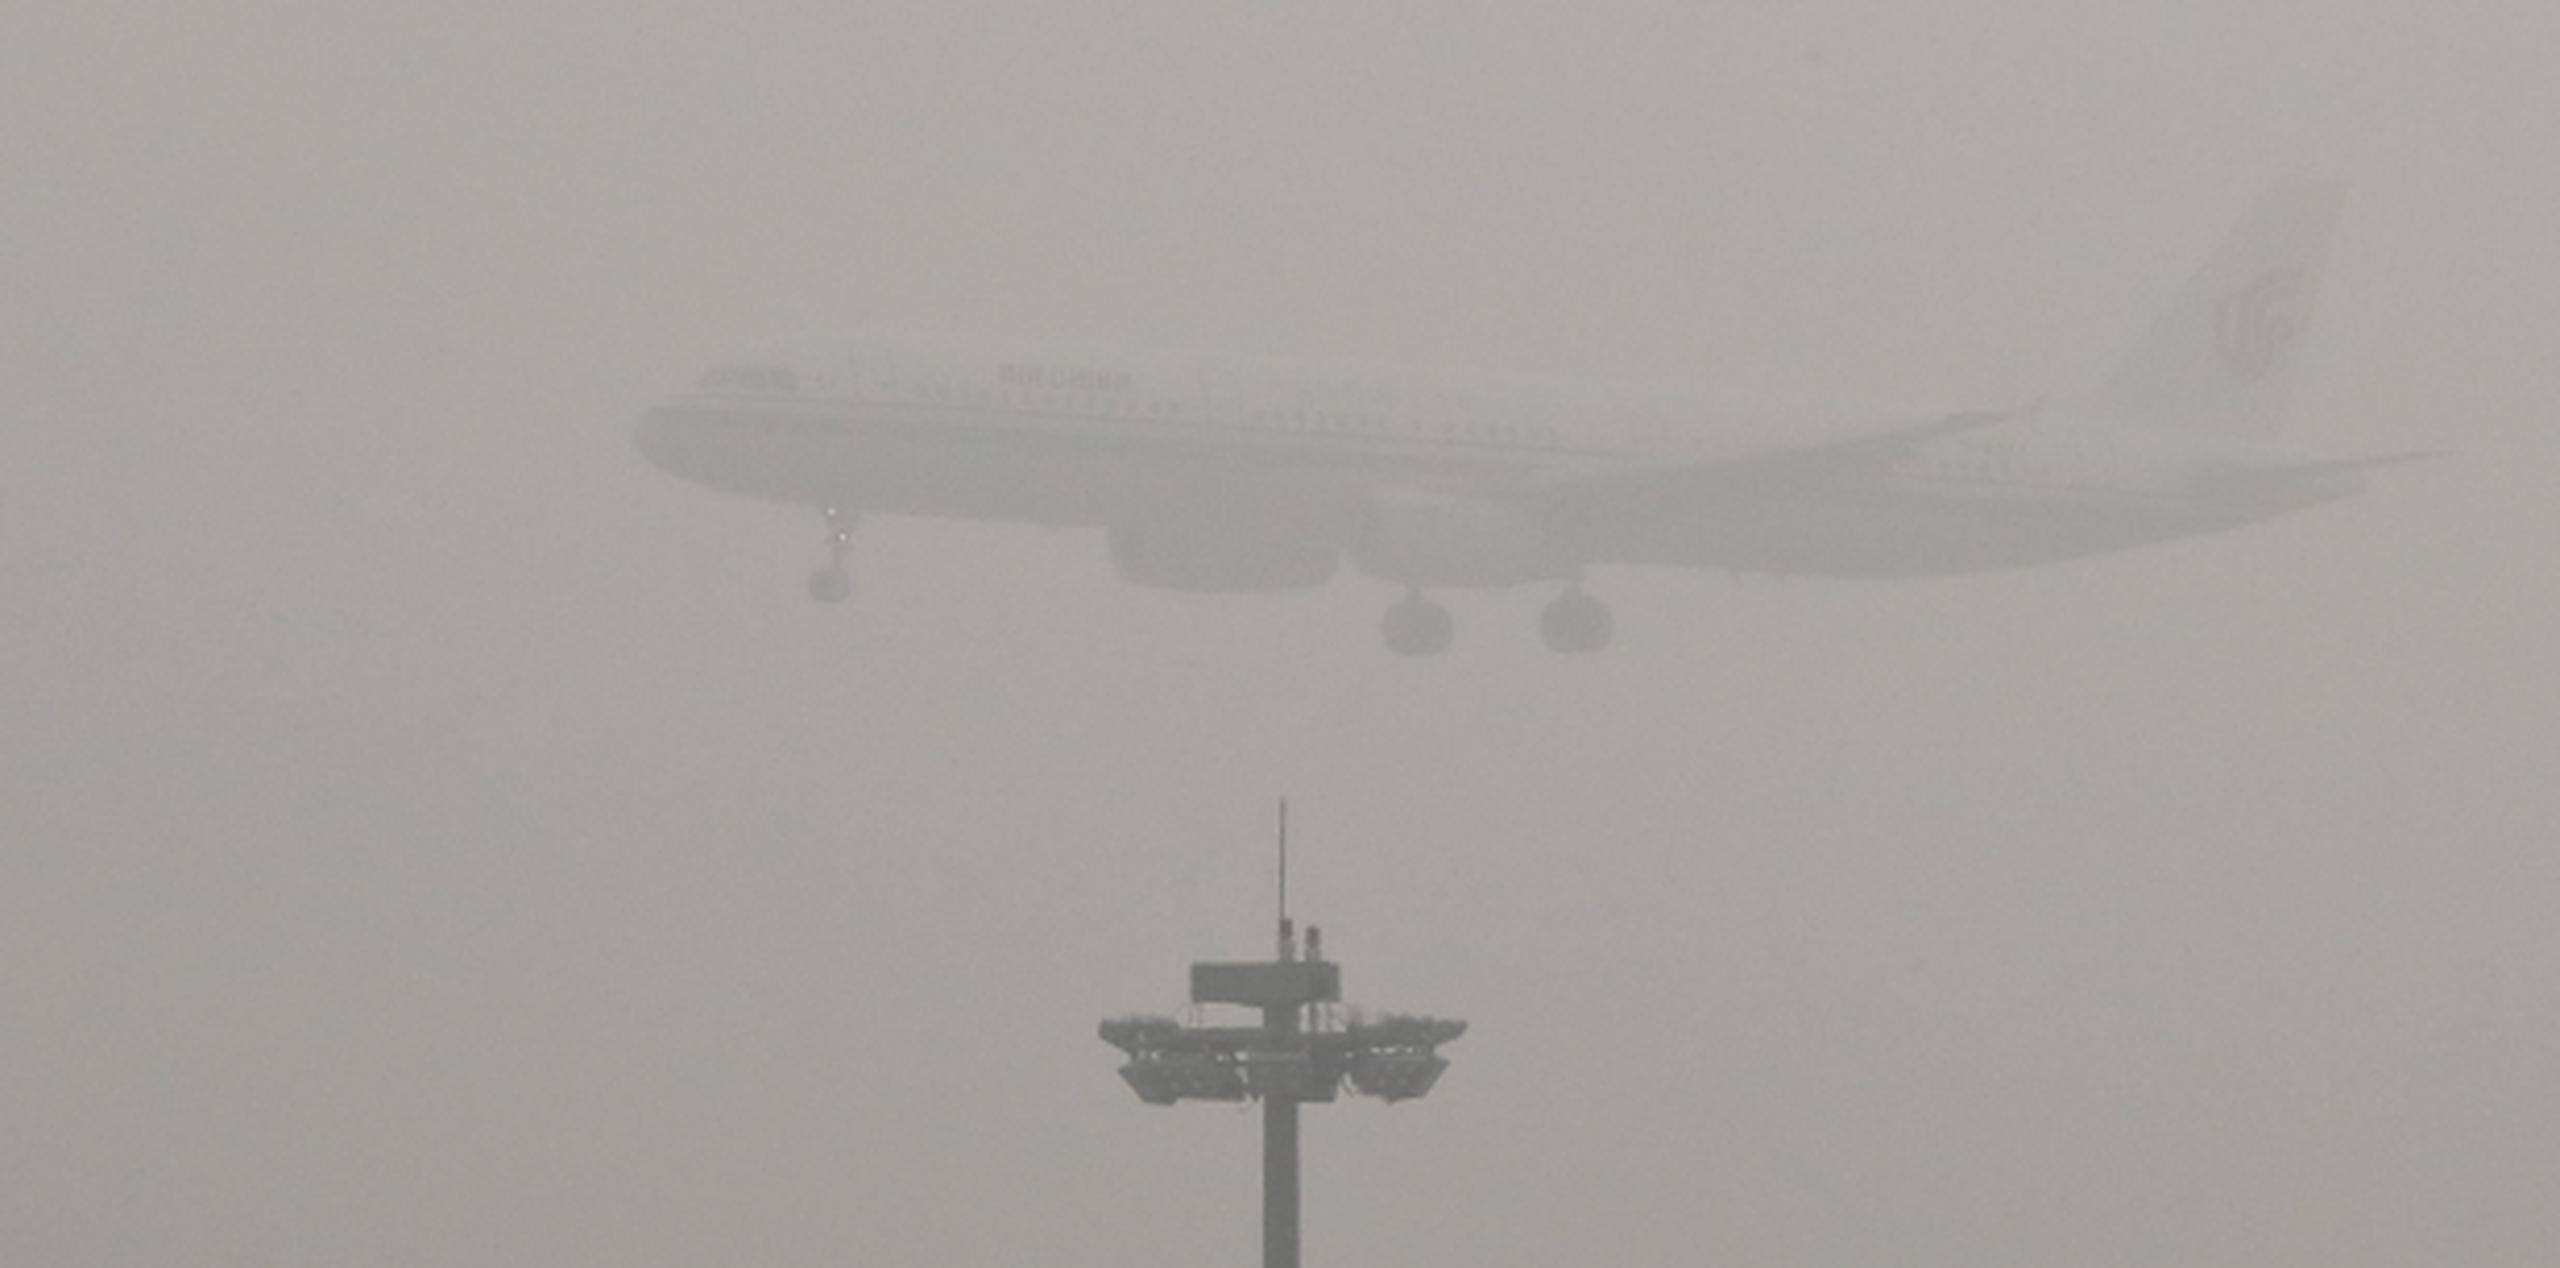 Más de 300 vuelos que tenían que despegar de Tianjin, también en el norte, fueron cancelados el domingo por la mala visibilidad. (AP)